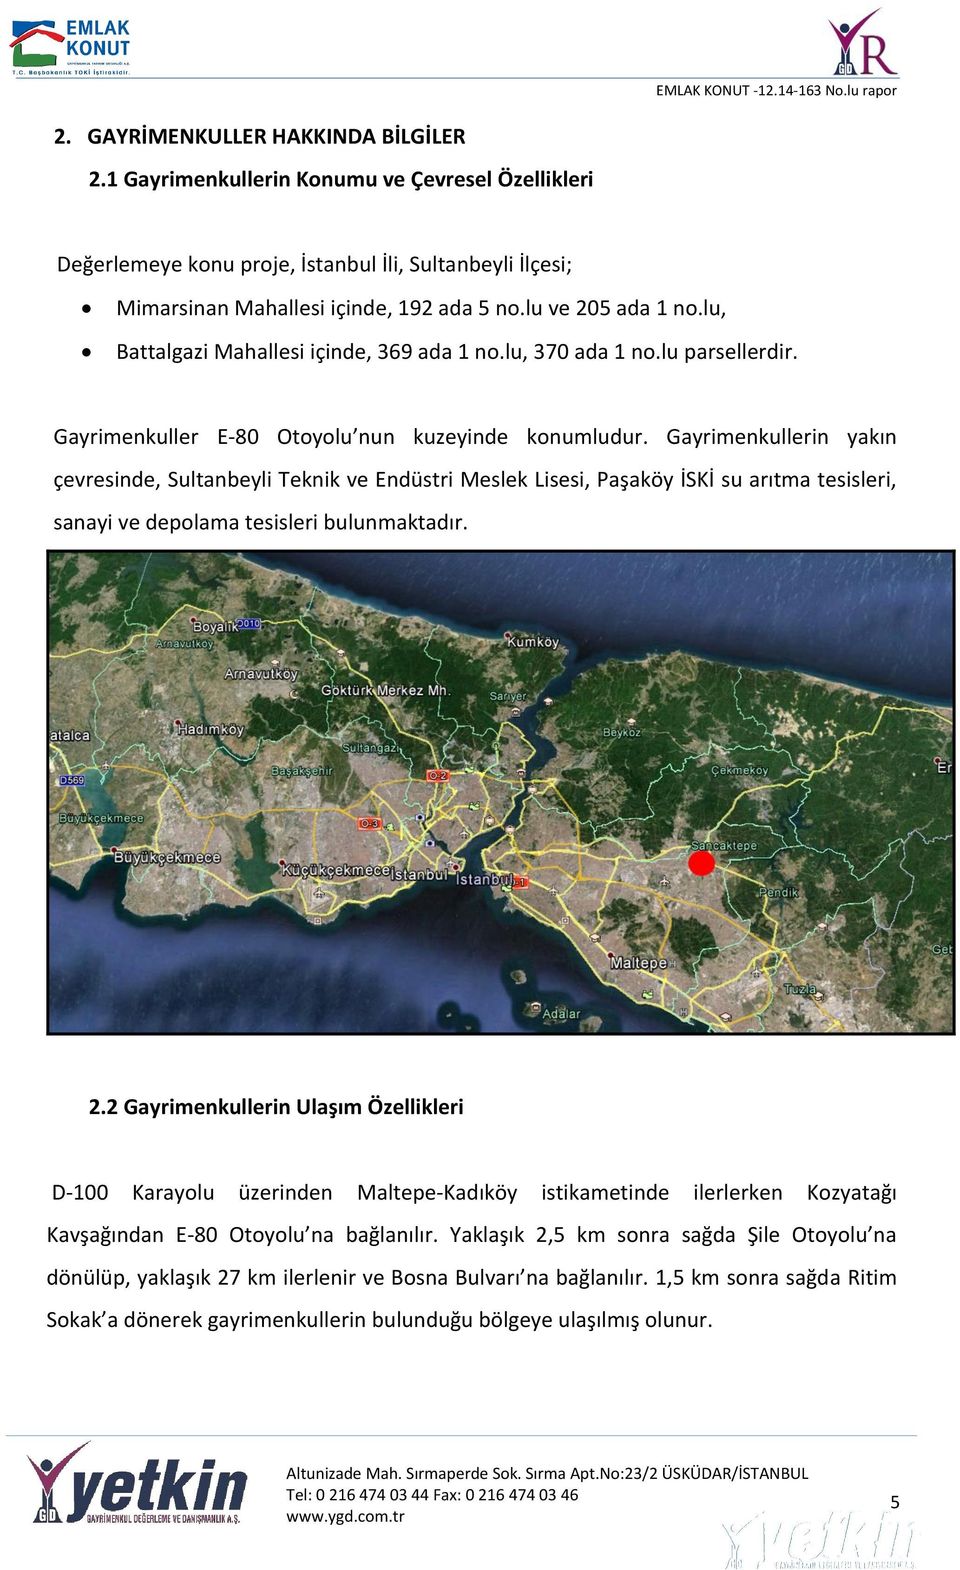 Gayrimenkullerin yakın çevresinde, Sultanbeyli Teknik ve Endüstri Meslek Lisesi, Paşaköy İSKİ su arıtma tesisleri, sanayi ve depolama tesisleri bulunmaktadır. 2.